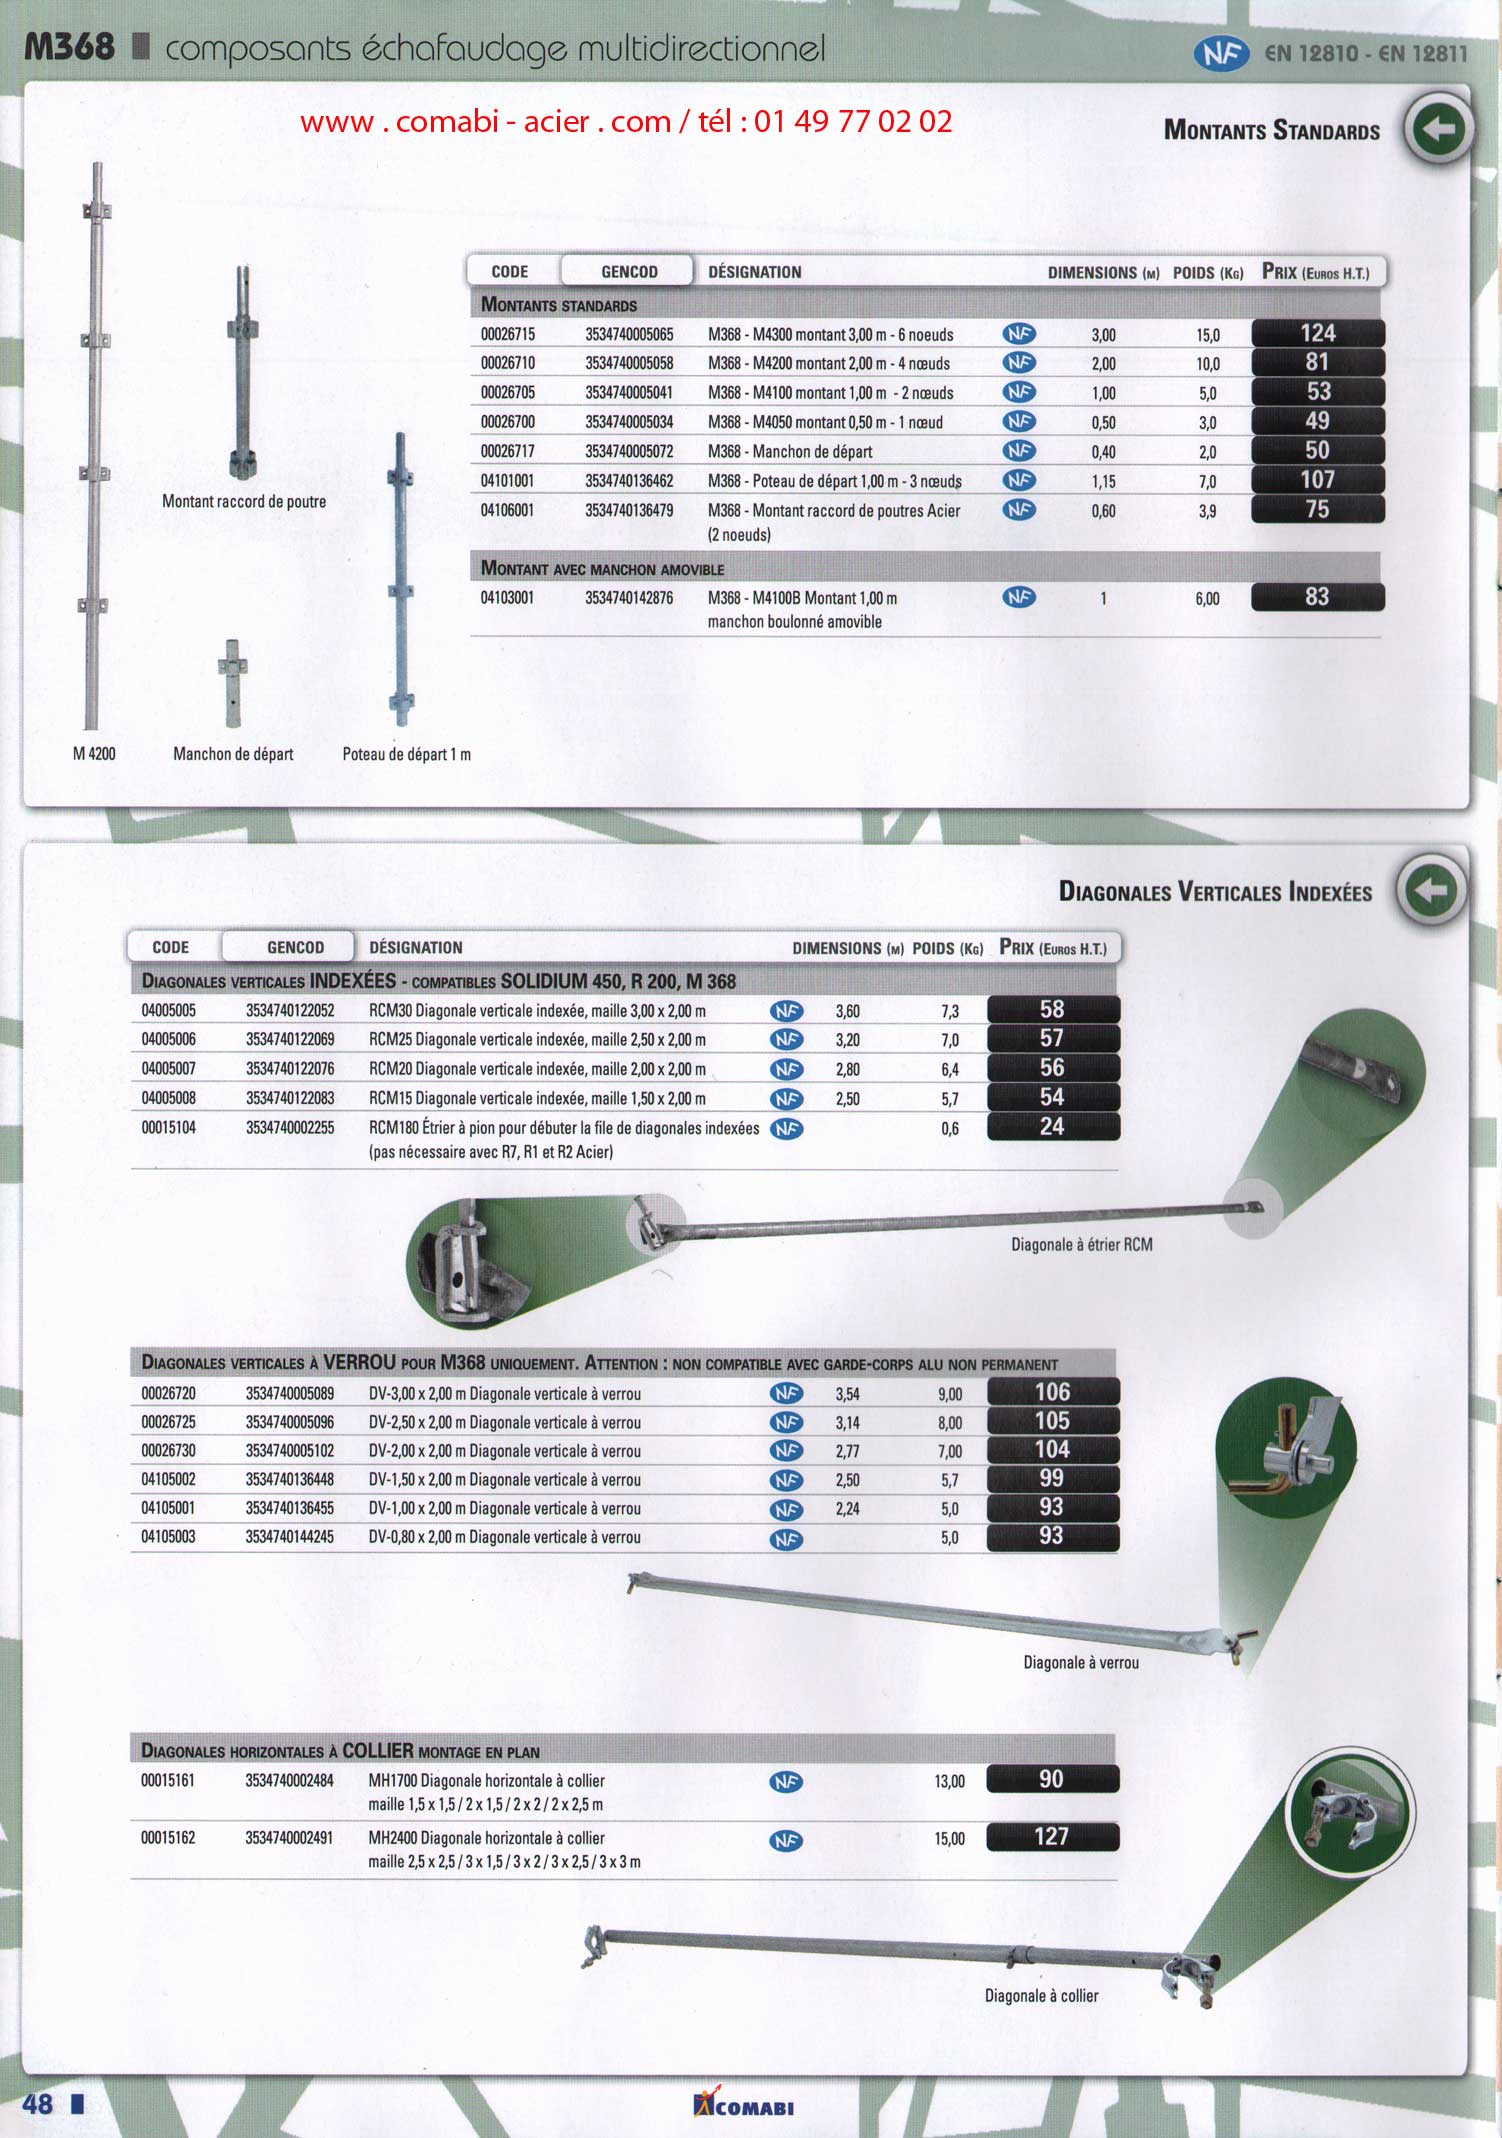 composant d' échafaudage multidirectionnel M368 norme NF EN 12810 et EN 12811, montants standards à noeuds, diagonale indexée verticale à verrou, collier .